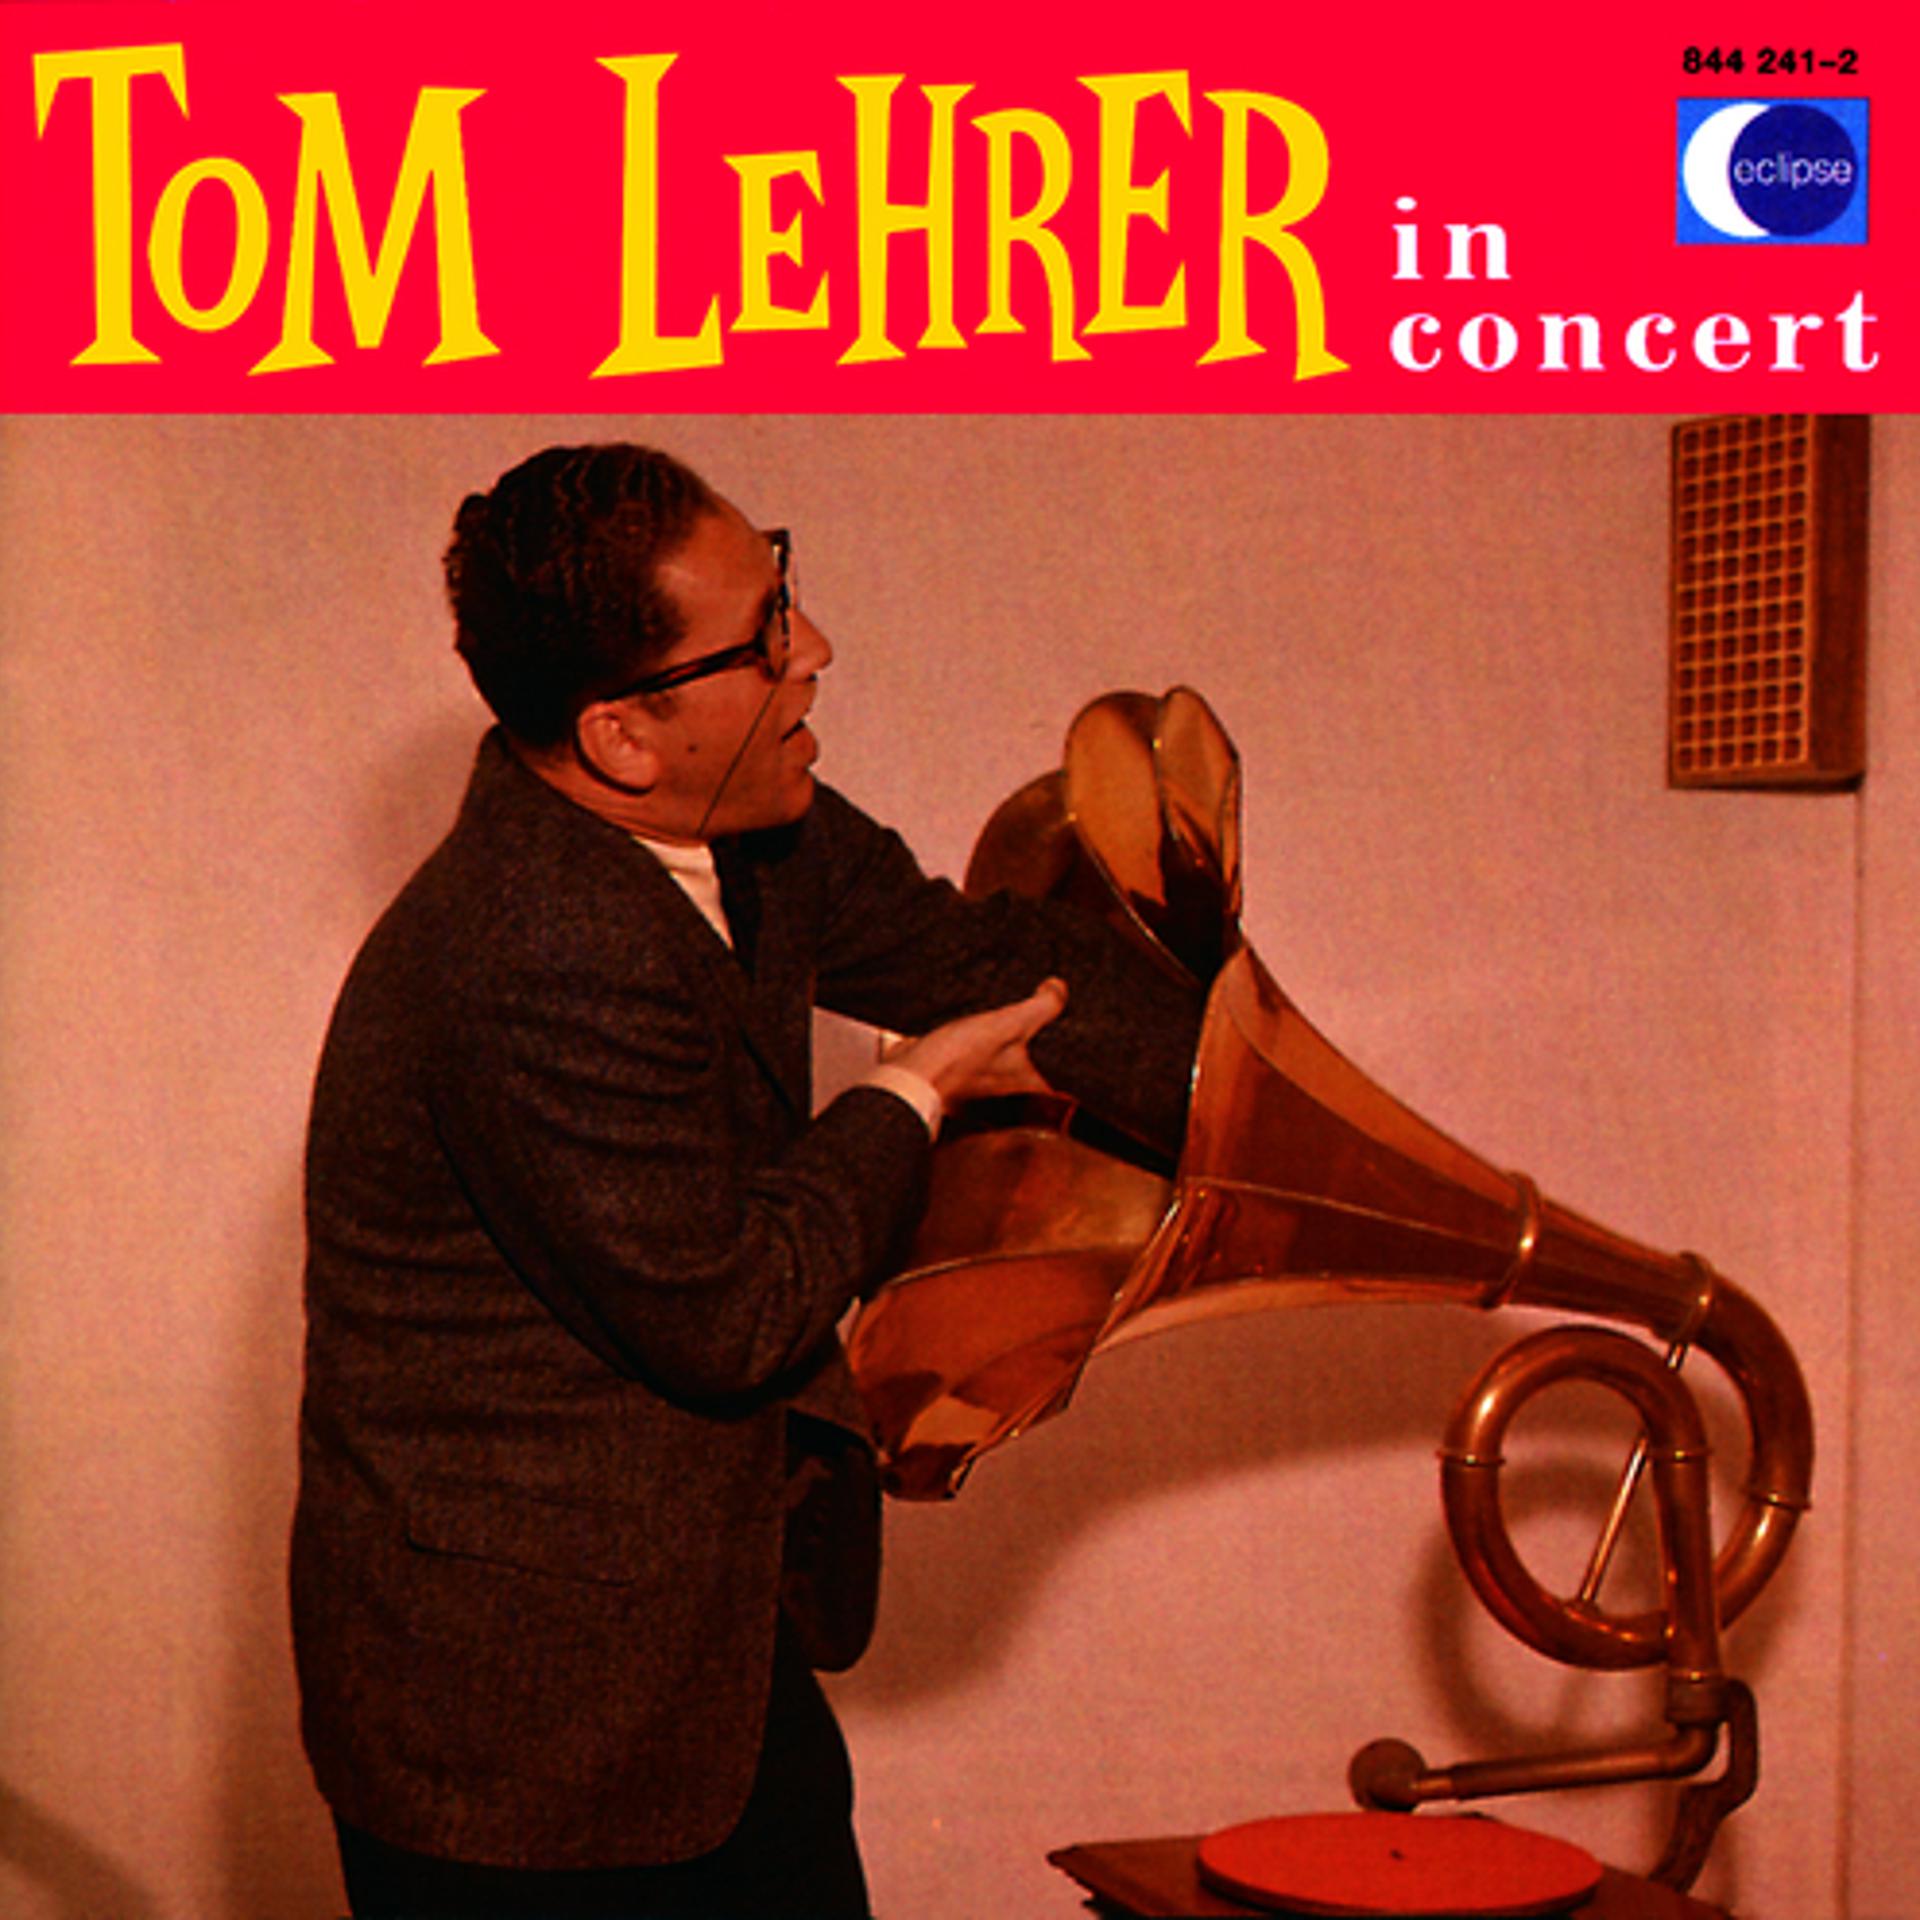 Tom lehrer